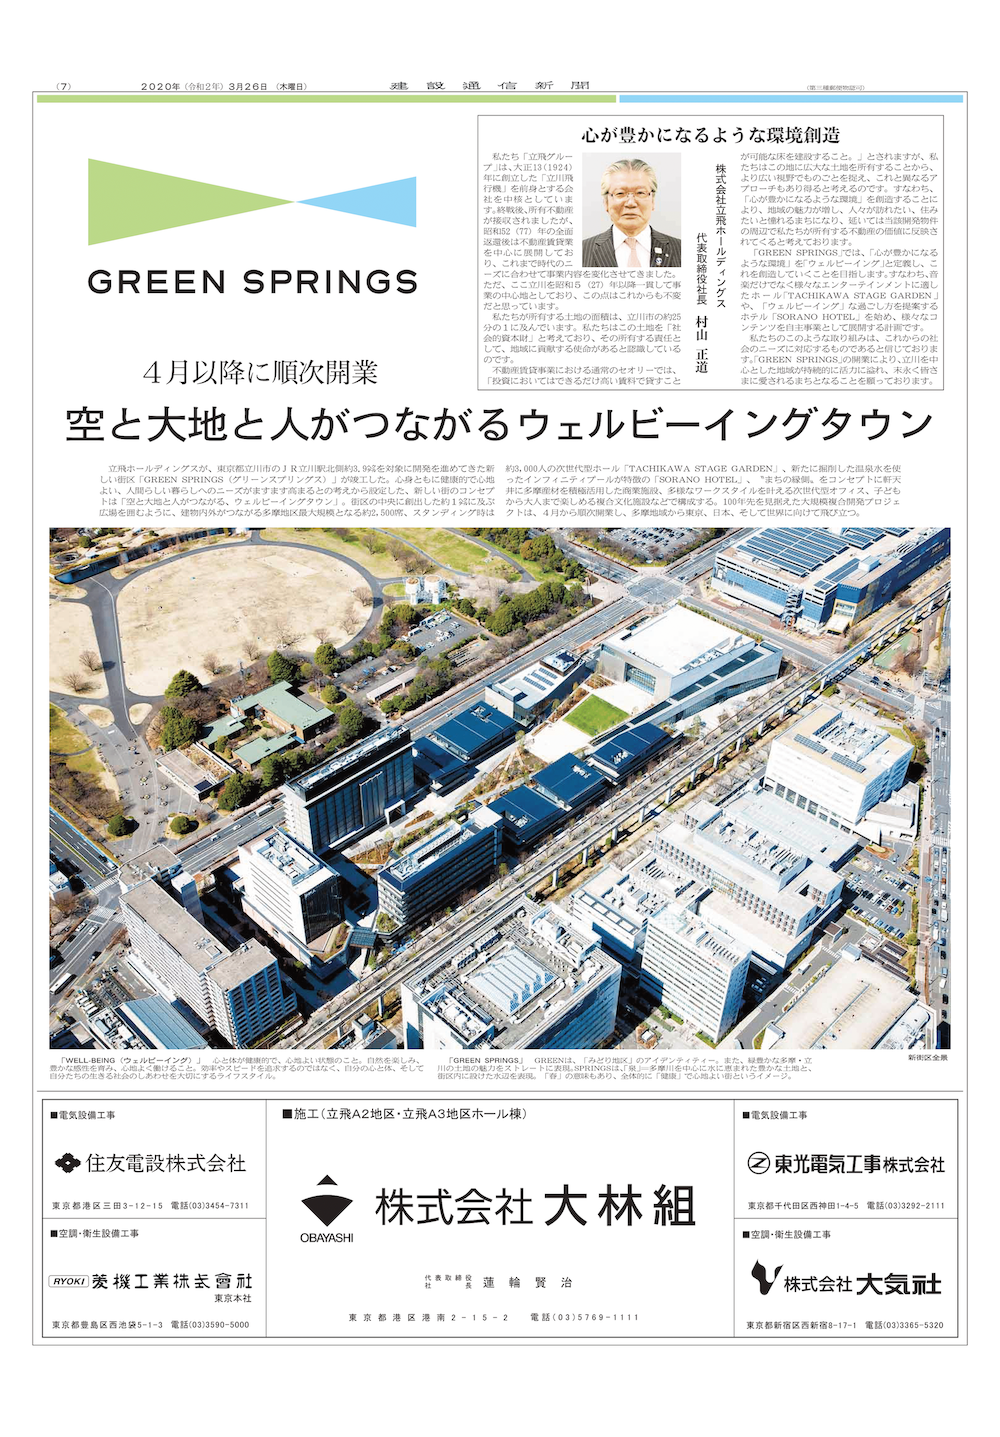 GREEN SPRINGSの竣工広告が 『建設通信新聞』に掲載